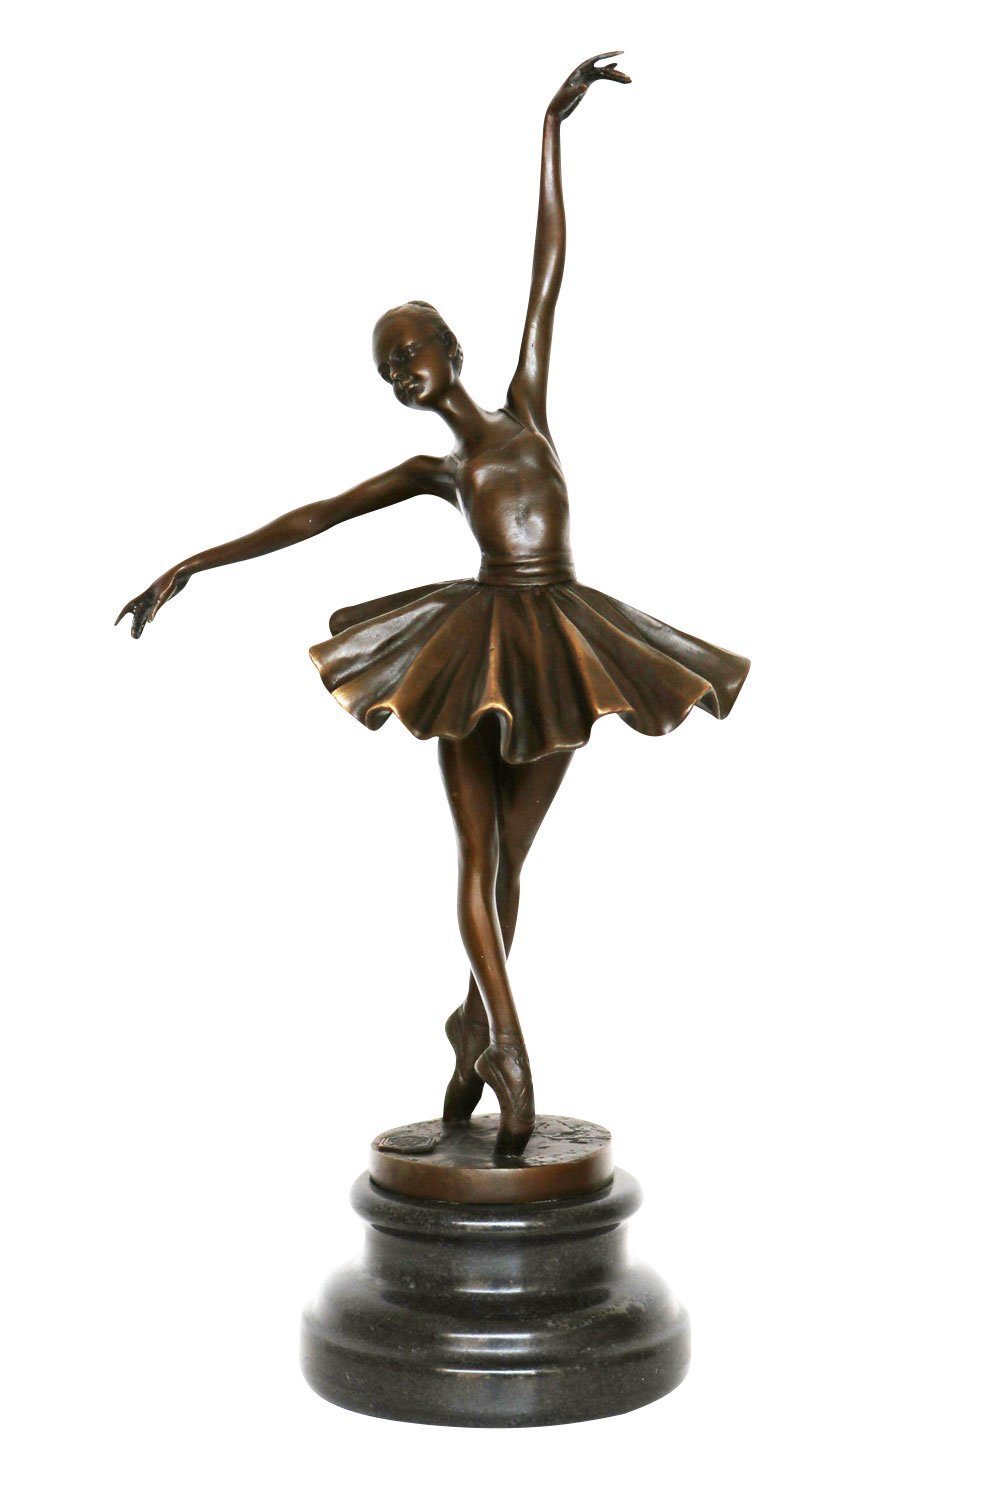 Figur Aubaho nach Ballerina Bronze Tänzerin Ballett Degas Skulptur Bronzeskulptur Repl